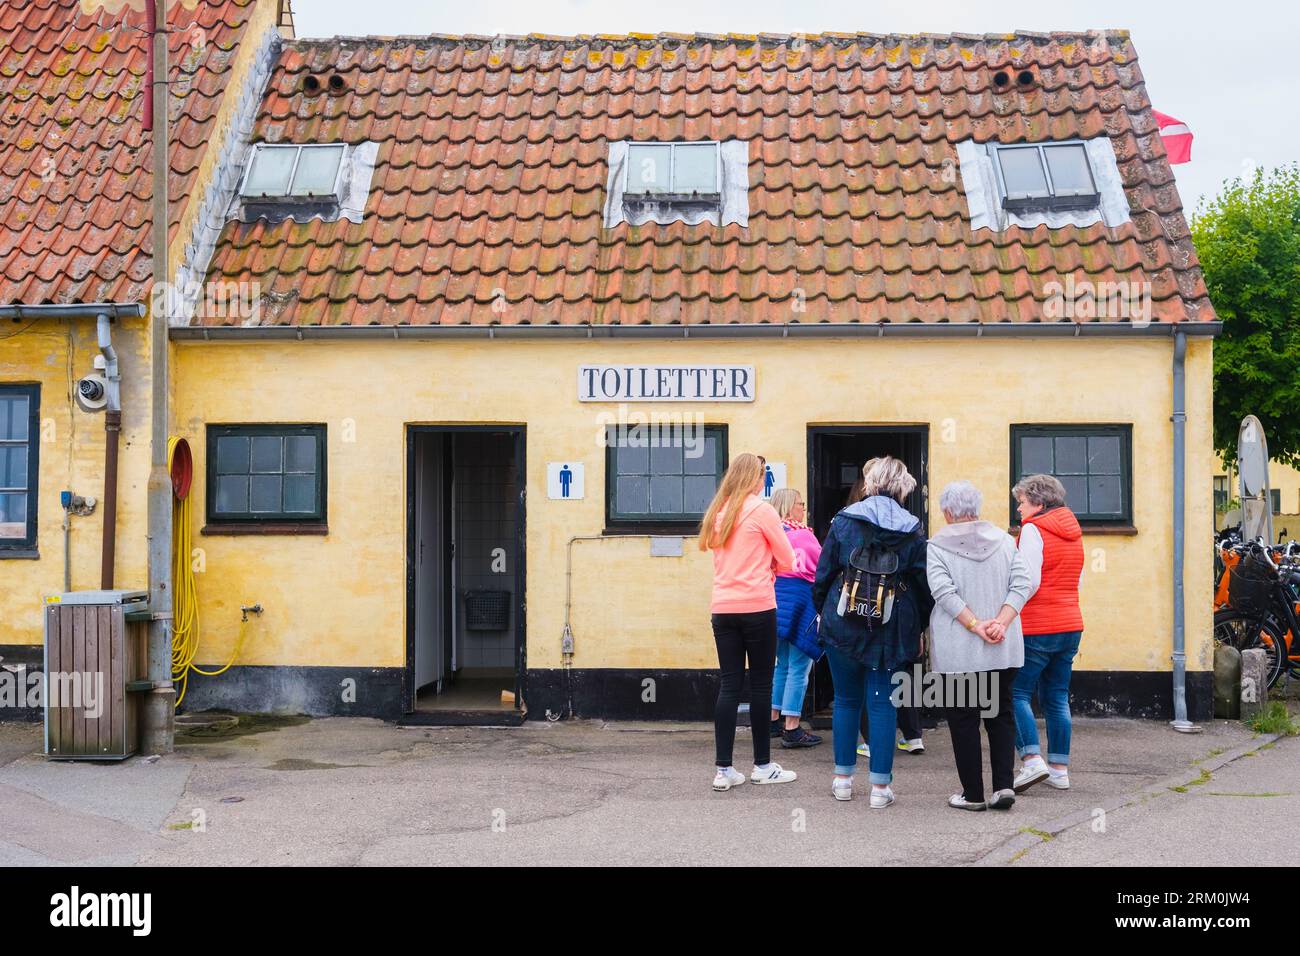 kopenhagen, dänemark - 8. august 2023: Gruppe von Frauen Schlange an der Tür einer Toilette, während die Männer leer sind. Stockfoto